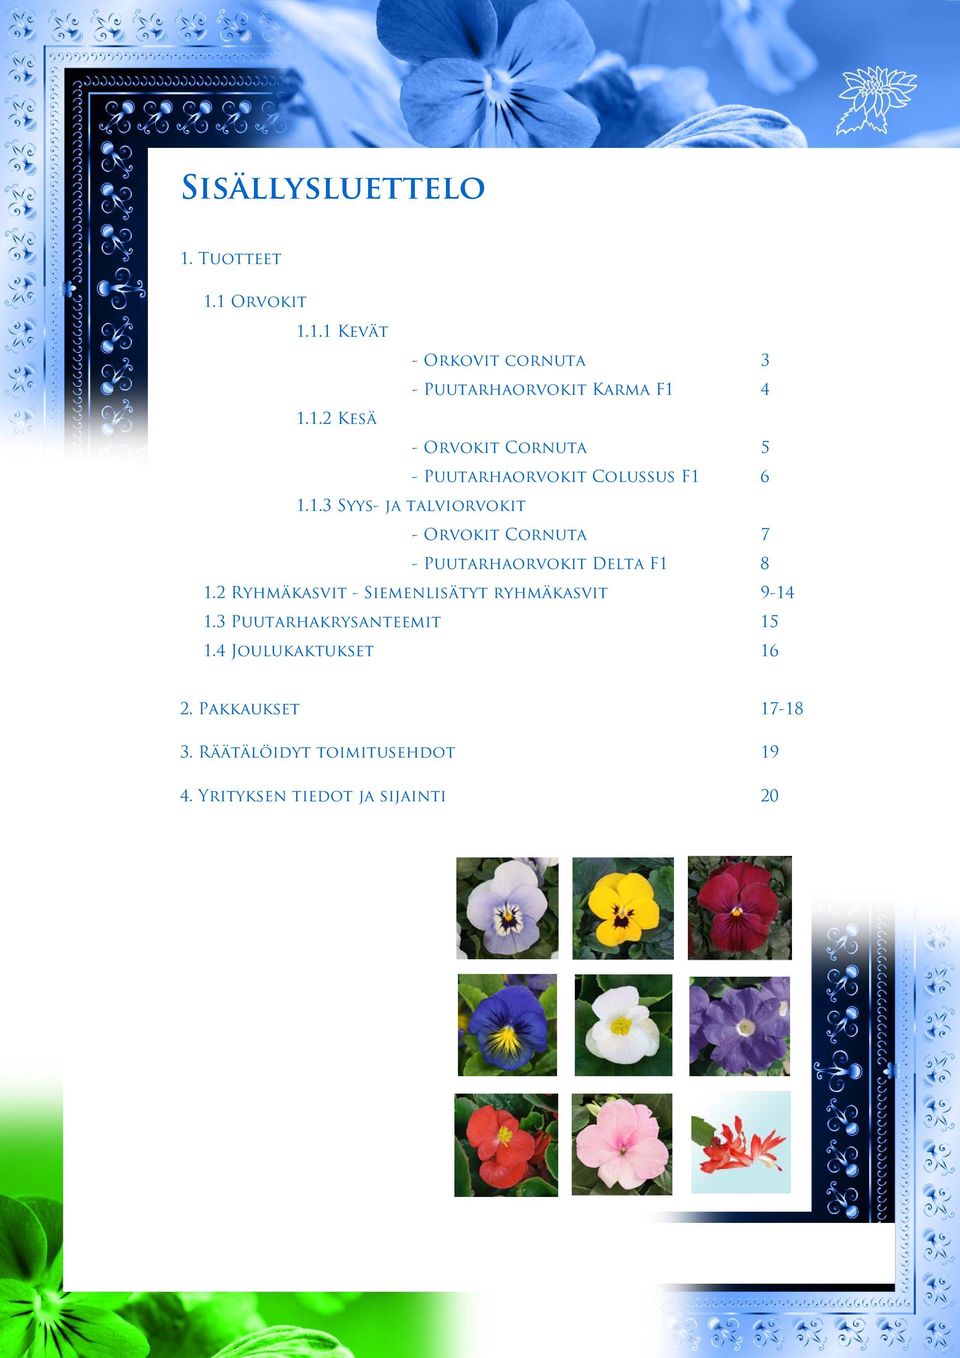 2 Ryhmäkasvit - Siemenlisätyt ryhmäkasvit 9-14 1.3 Puutarhakrysanteemit 15 1.4 Joulukaktukset 16 2.